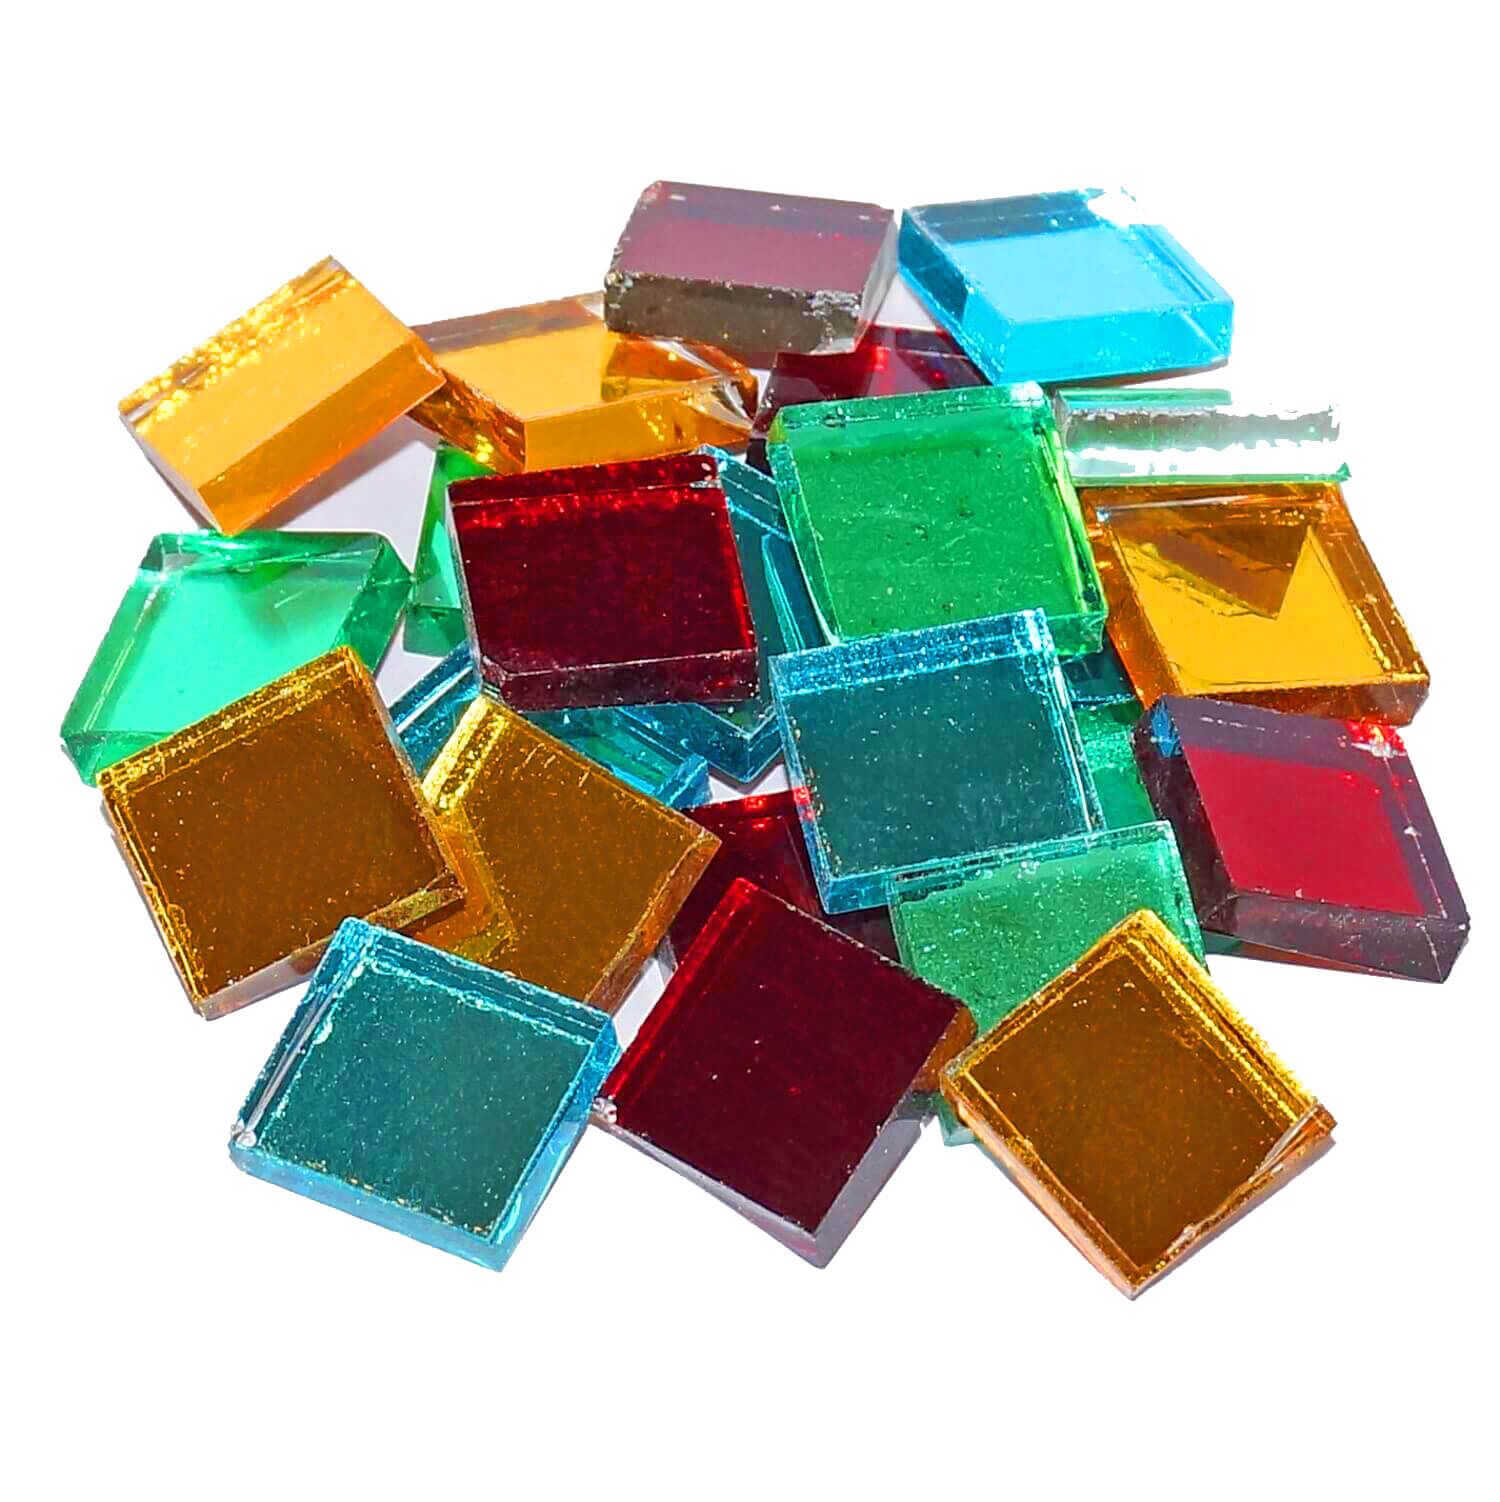 Töpfe Bunt Glasmosaiksteine mit Plastikschachtel Mosaiksteine zum Basteln für Bastelarbeiten Handwerksprojekte ToPicks 100 Stück Mosaiksteine Glas Trittsteine 